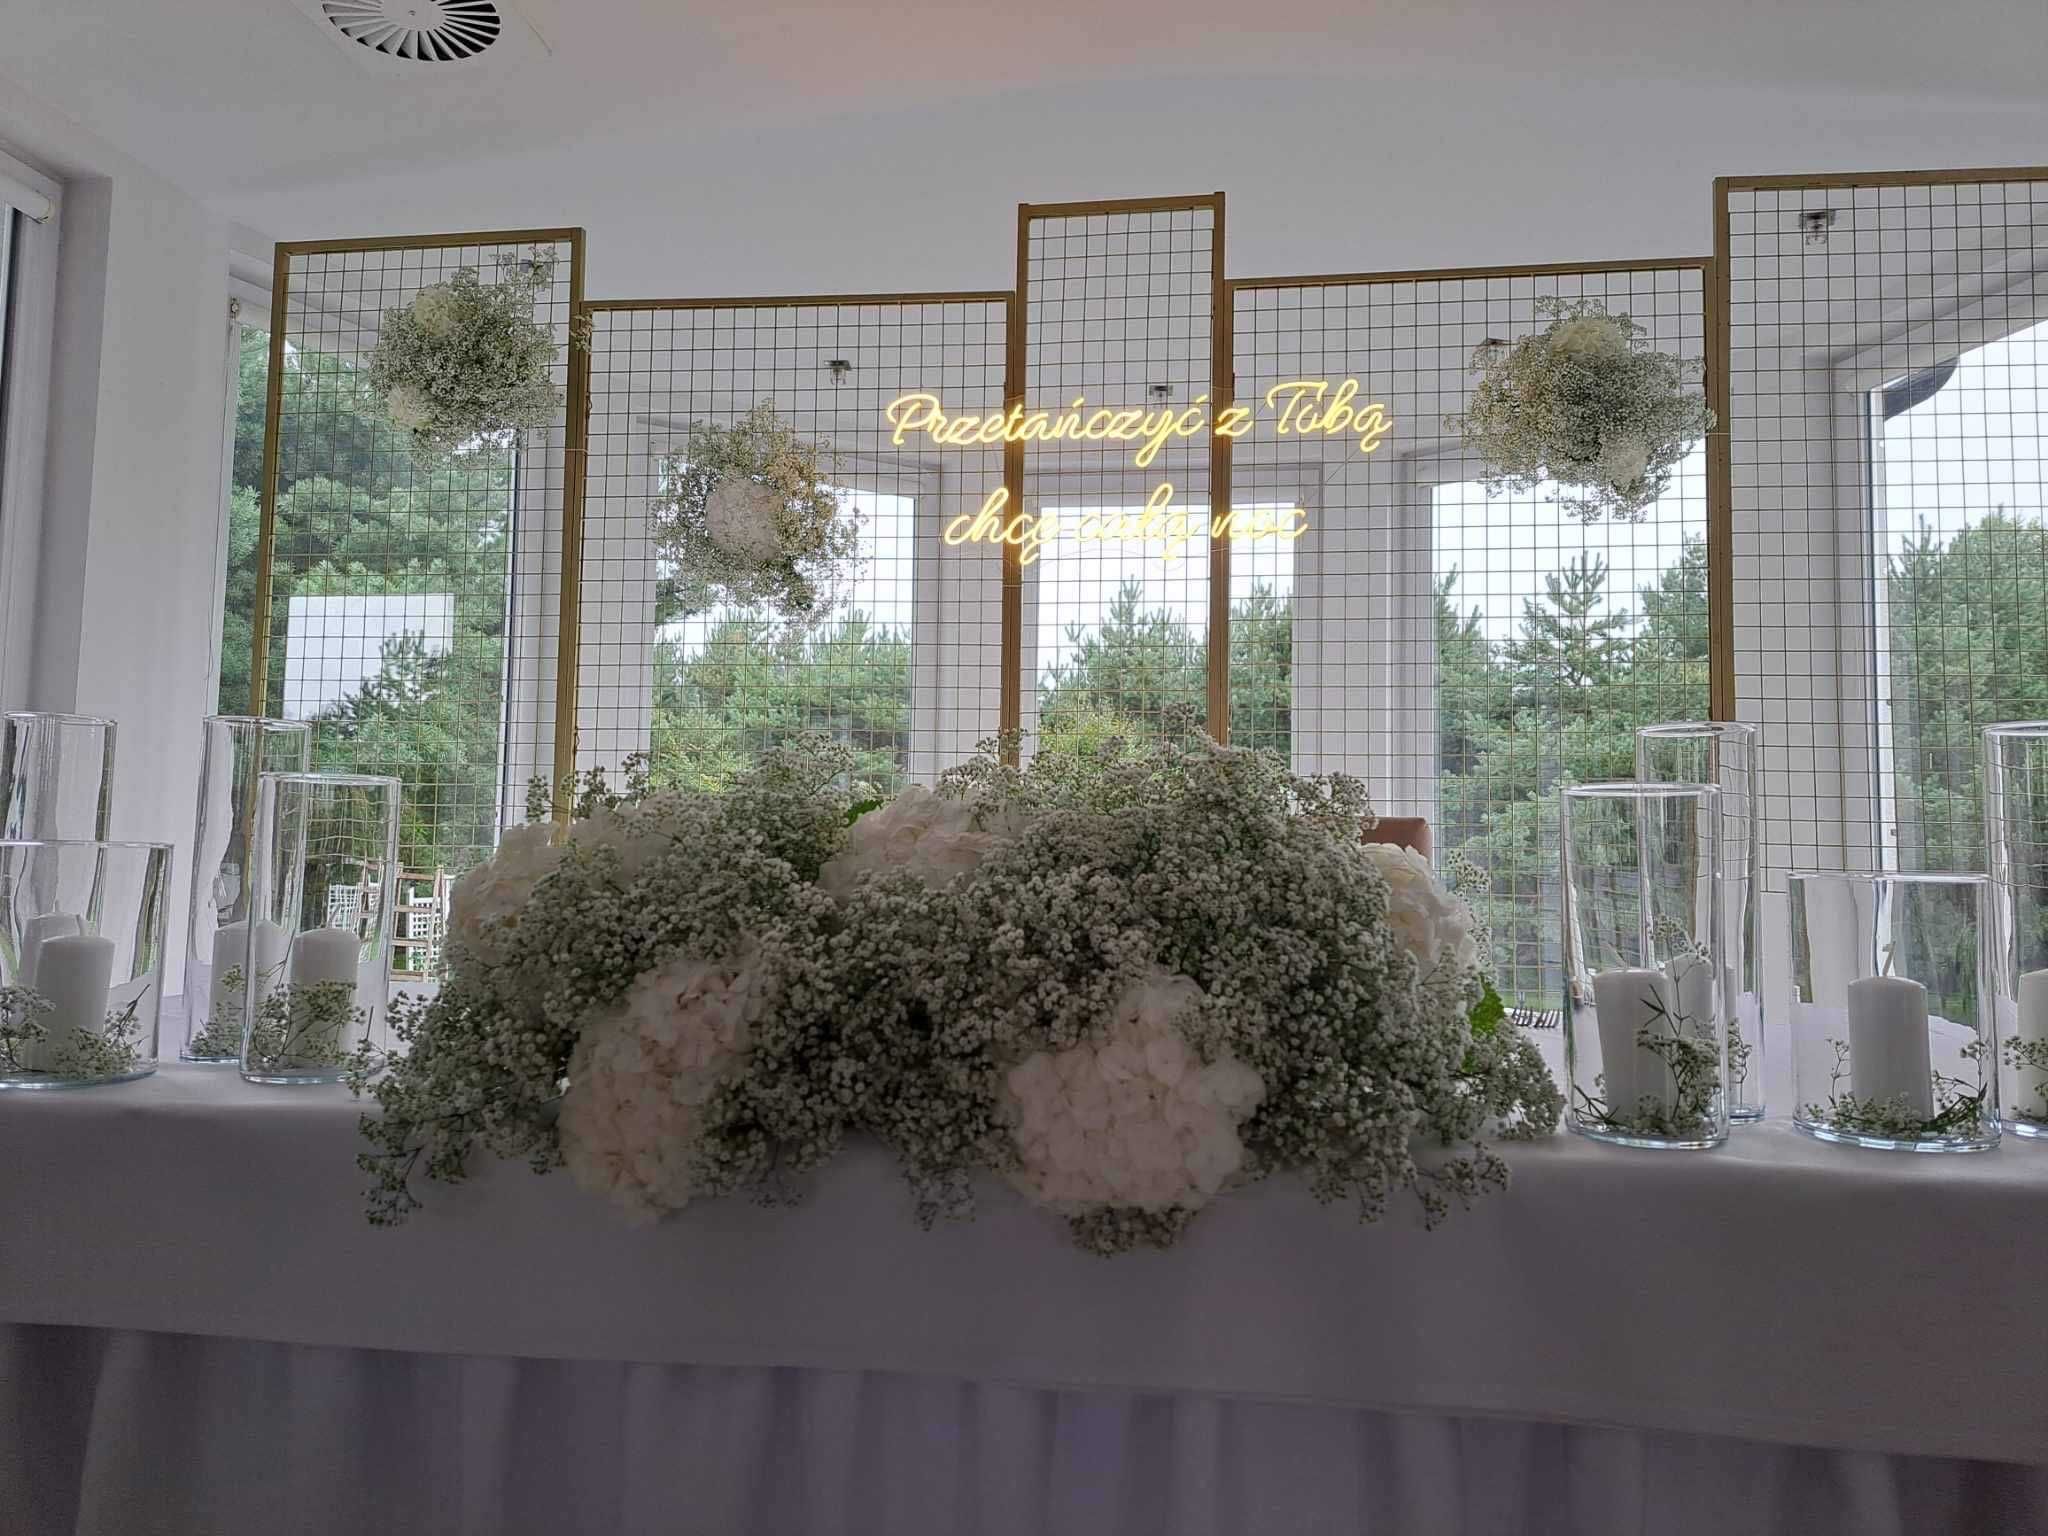 NAPIS LED - WYPOŻYCZALNIA ślubny NEON weselny dekoracje na ślub 3D